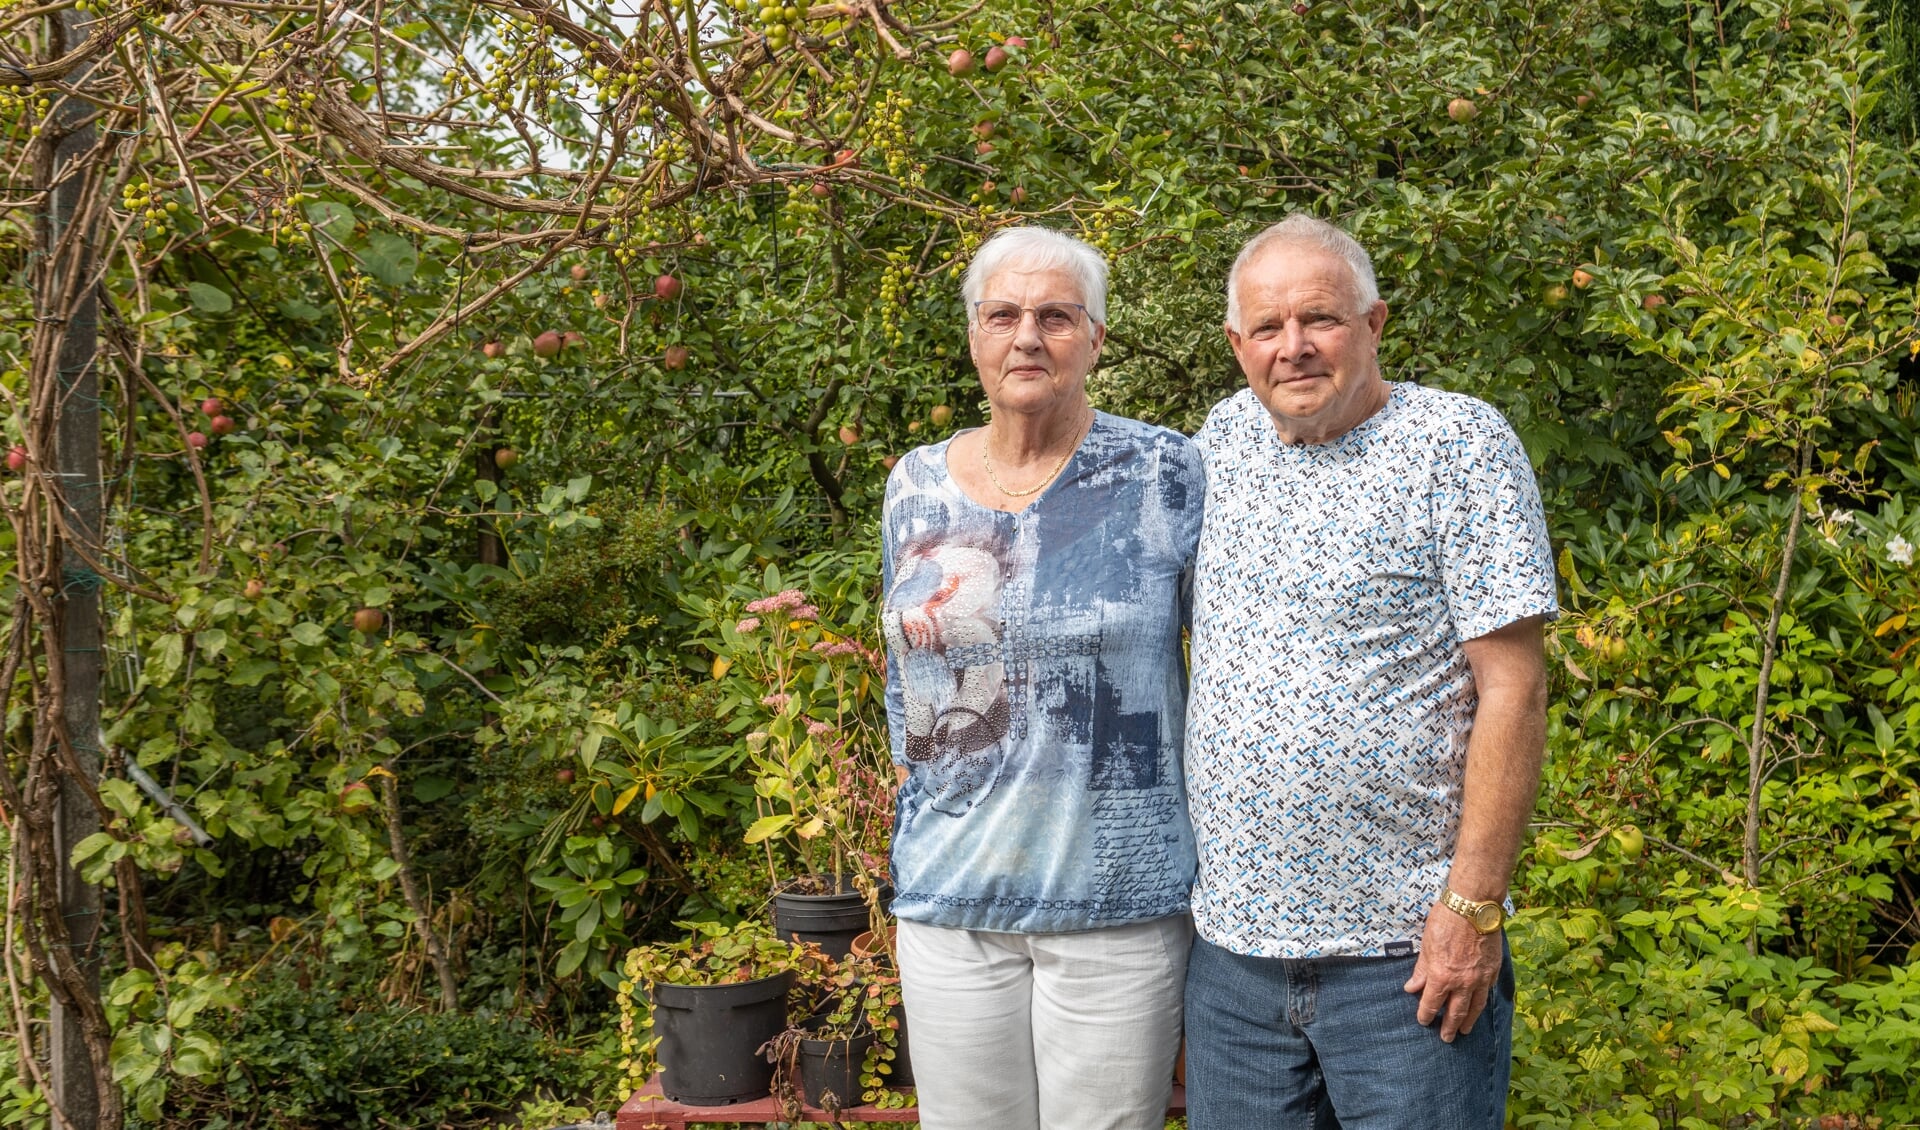 Sievert en Mennie Boekhold vieren dat ze al 60 jaar getrouwd zijn. (foto: André Dümmer)